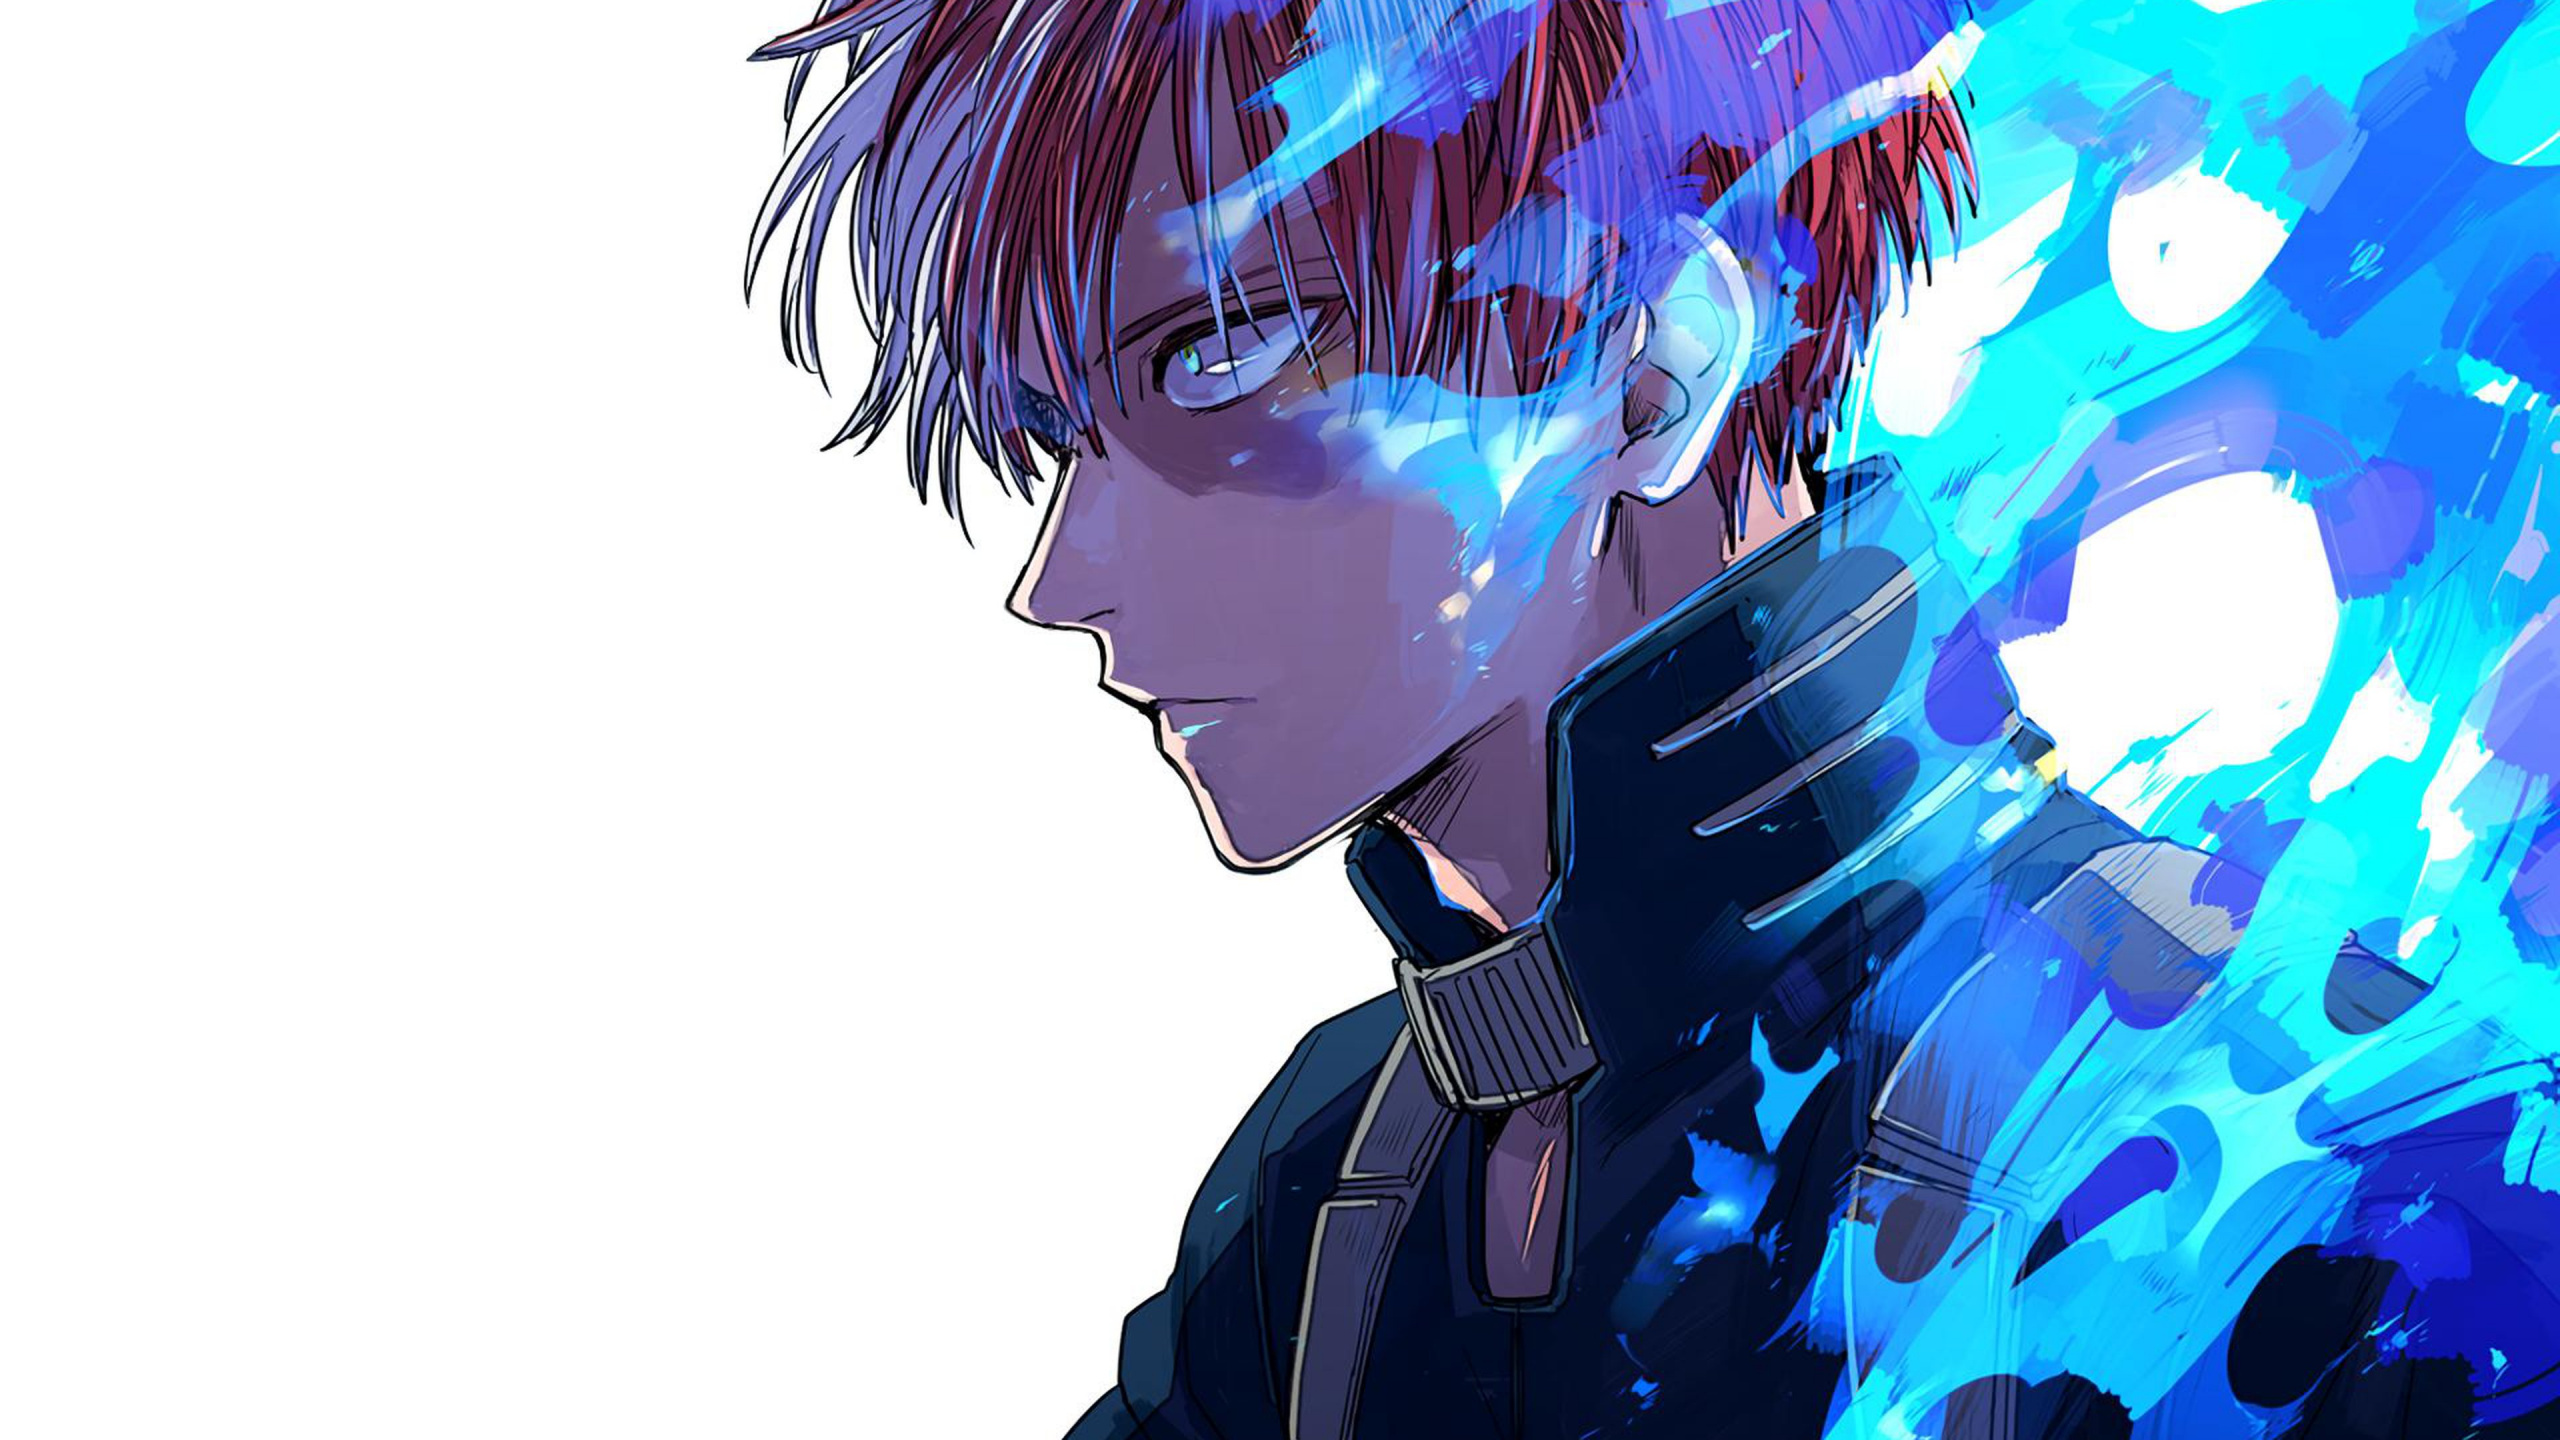 Mann im Schwarzen Anzug Anime-Charakter. Wallpaper in 2560x1440 Resolution